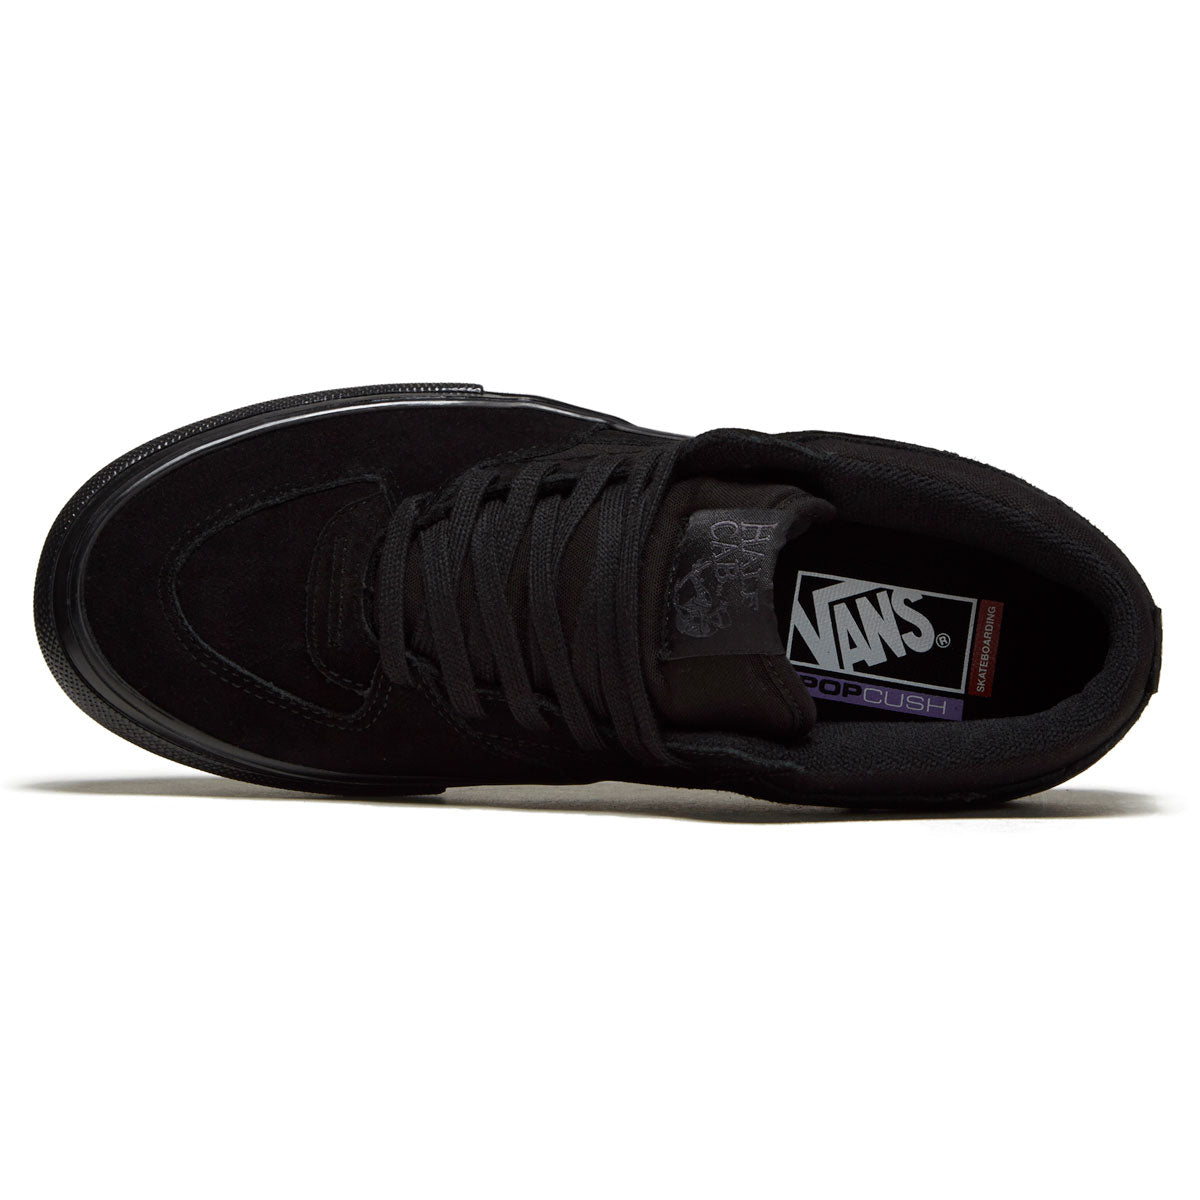 Vans Skate Half Cab Shoes - Black/Black image 3